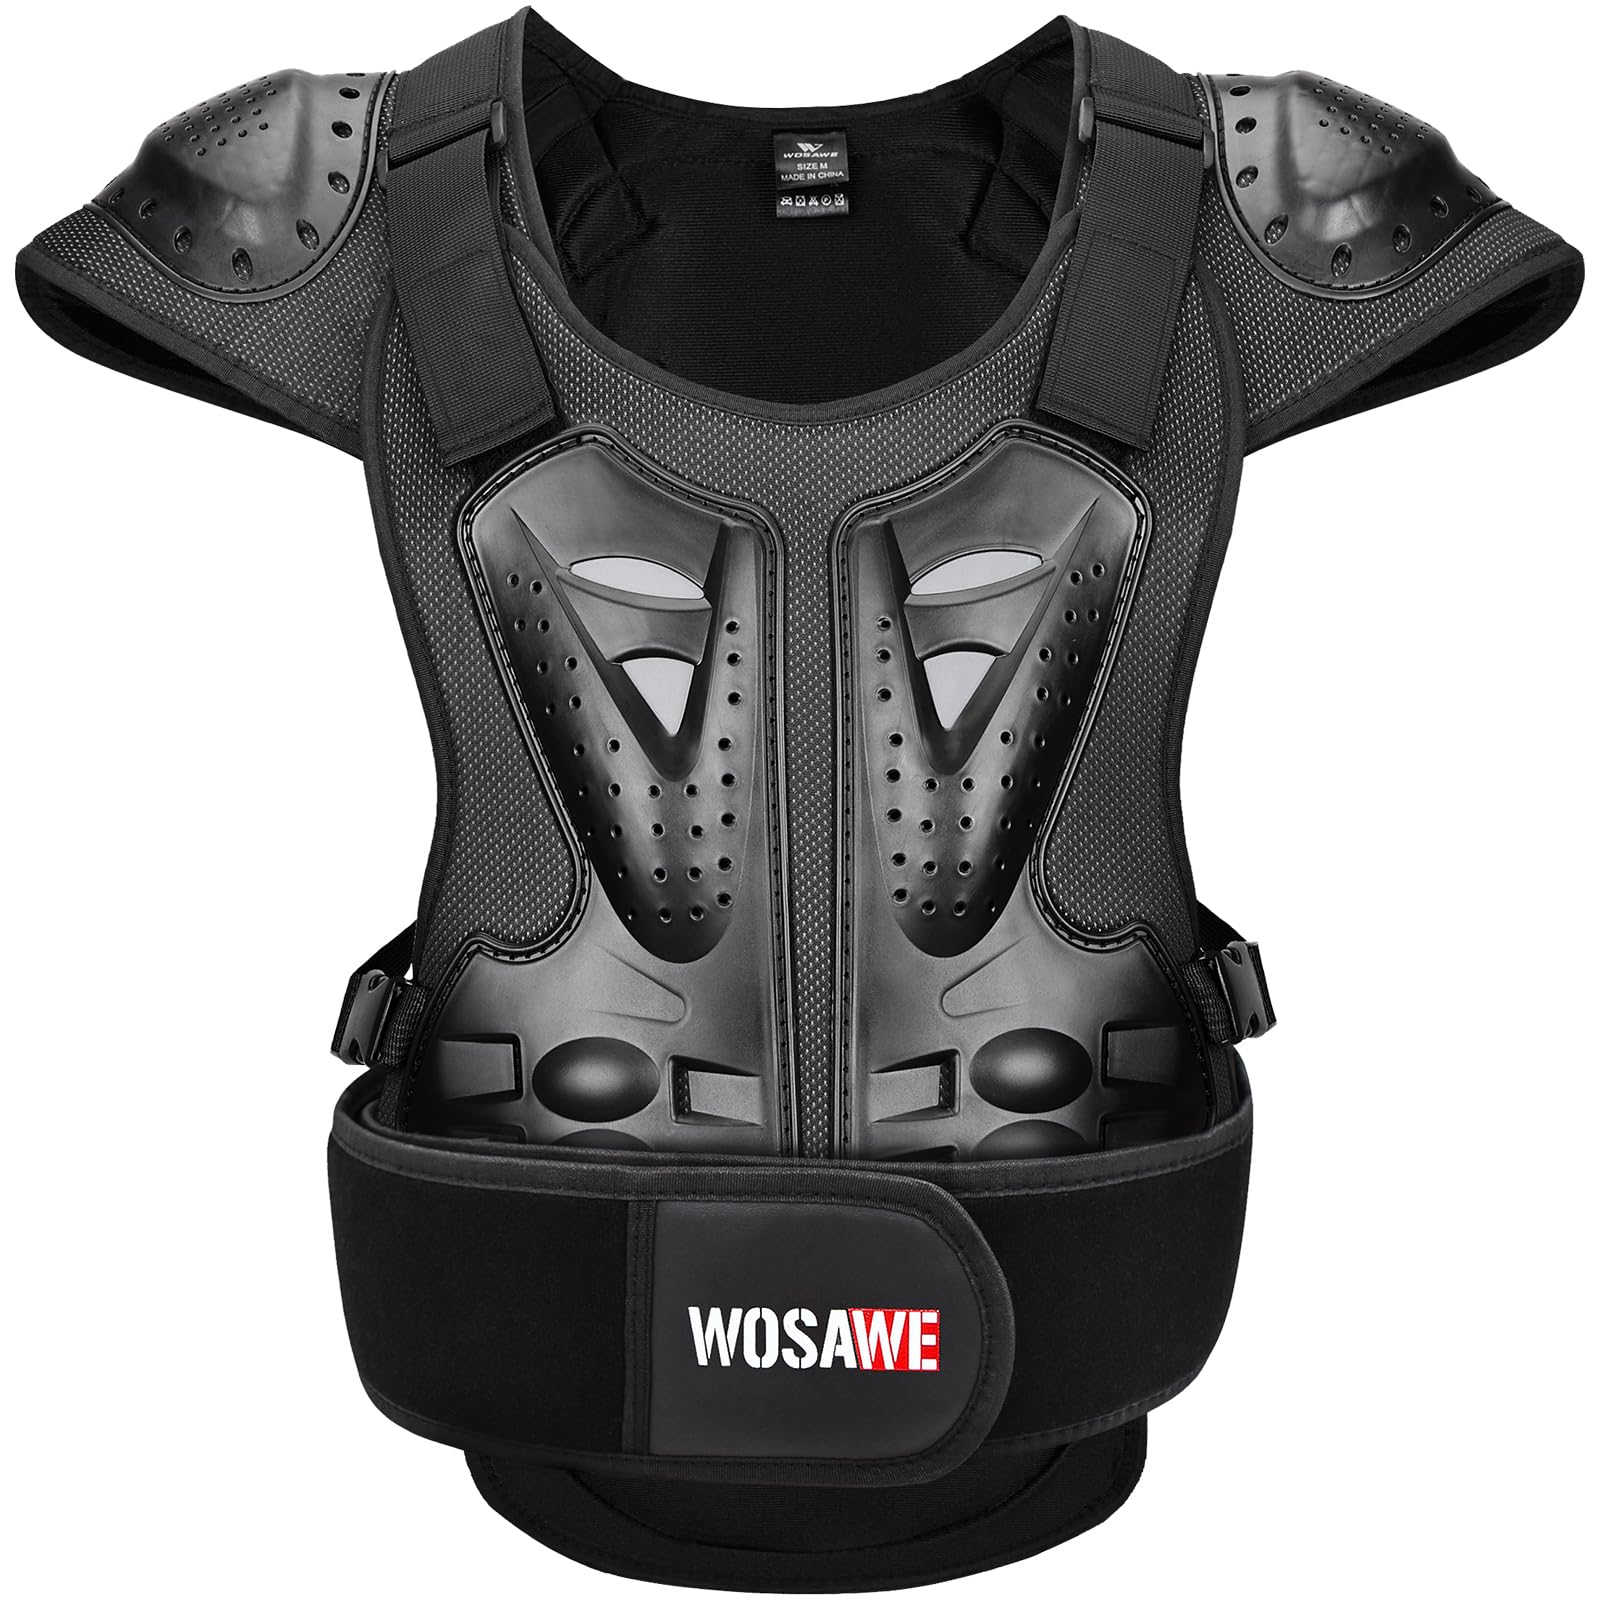 WOSAWE Motorrad Schutz Jacke für Erwachsene, Brustpanzer Racing Guard Rückenprotektoren Schutzausrüstung für Riding Skating Roller Skifahren Snowboard (15 Schwarz, M) von WOSAWE